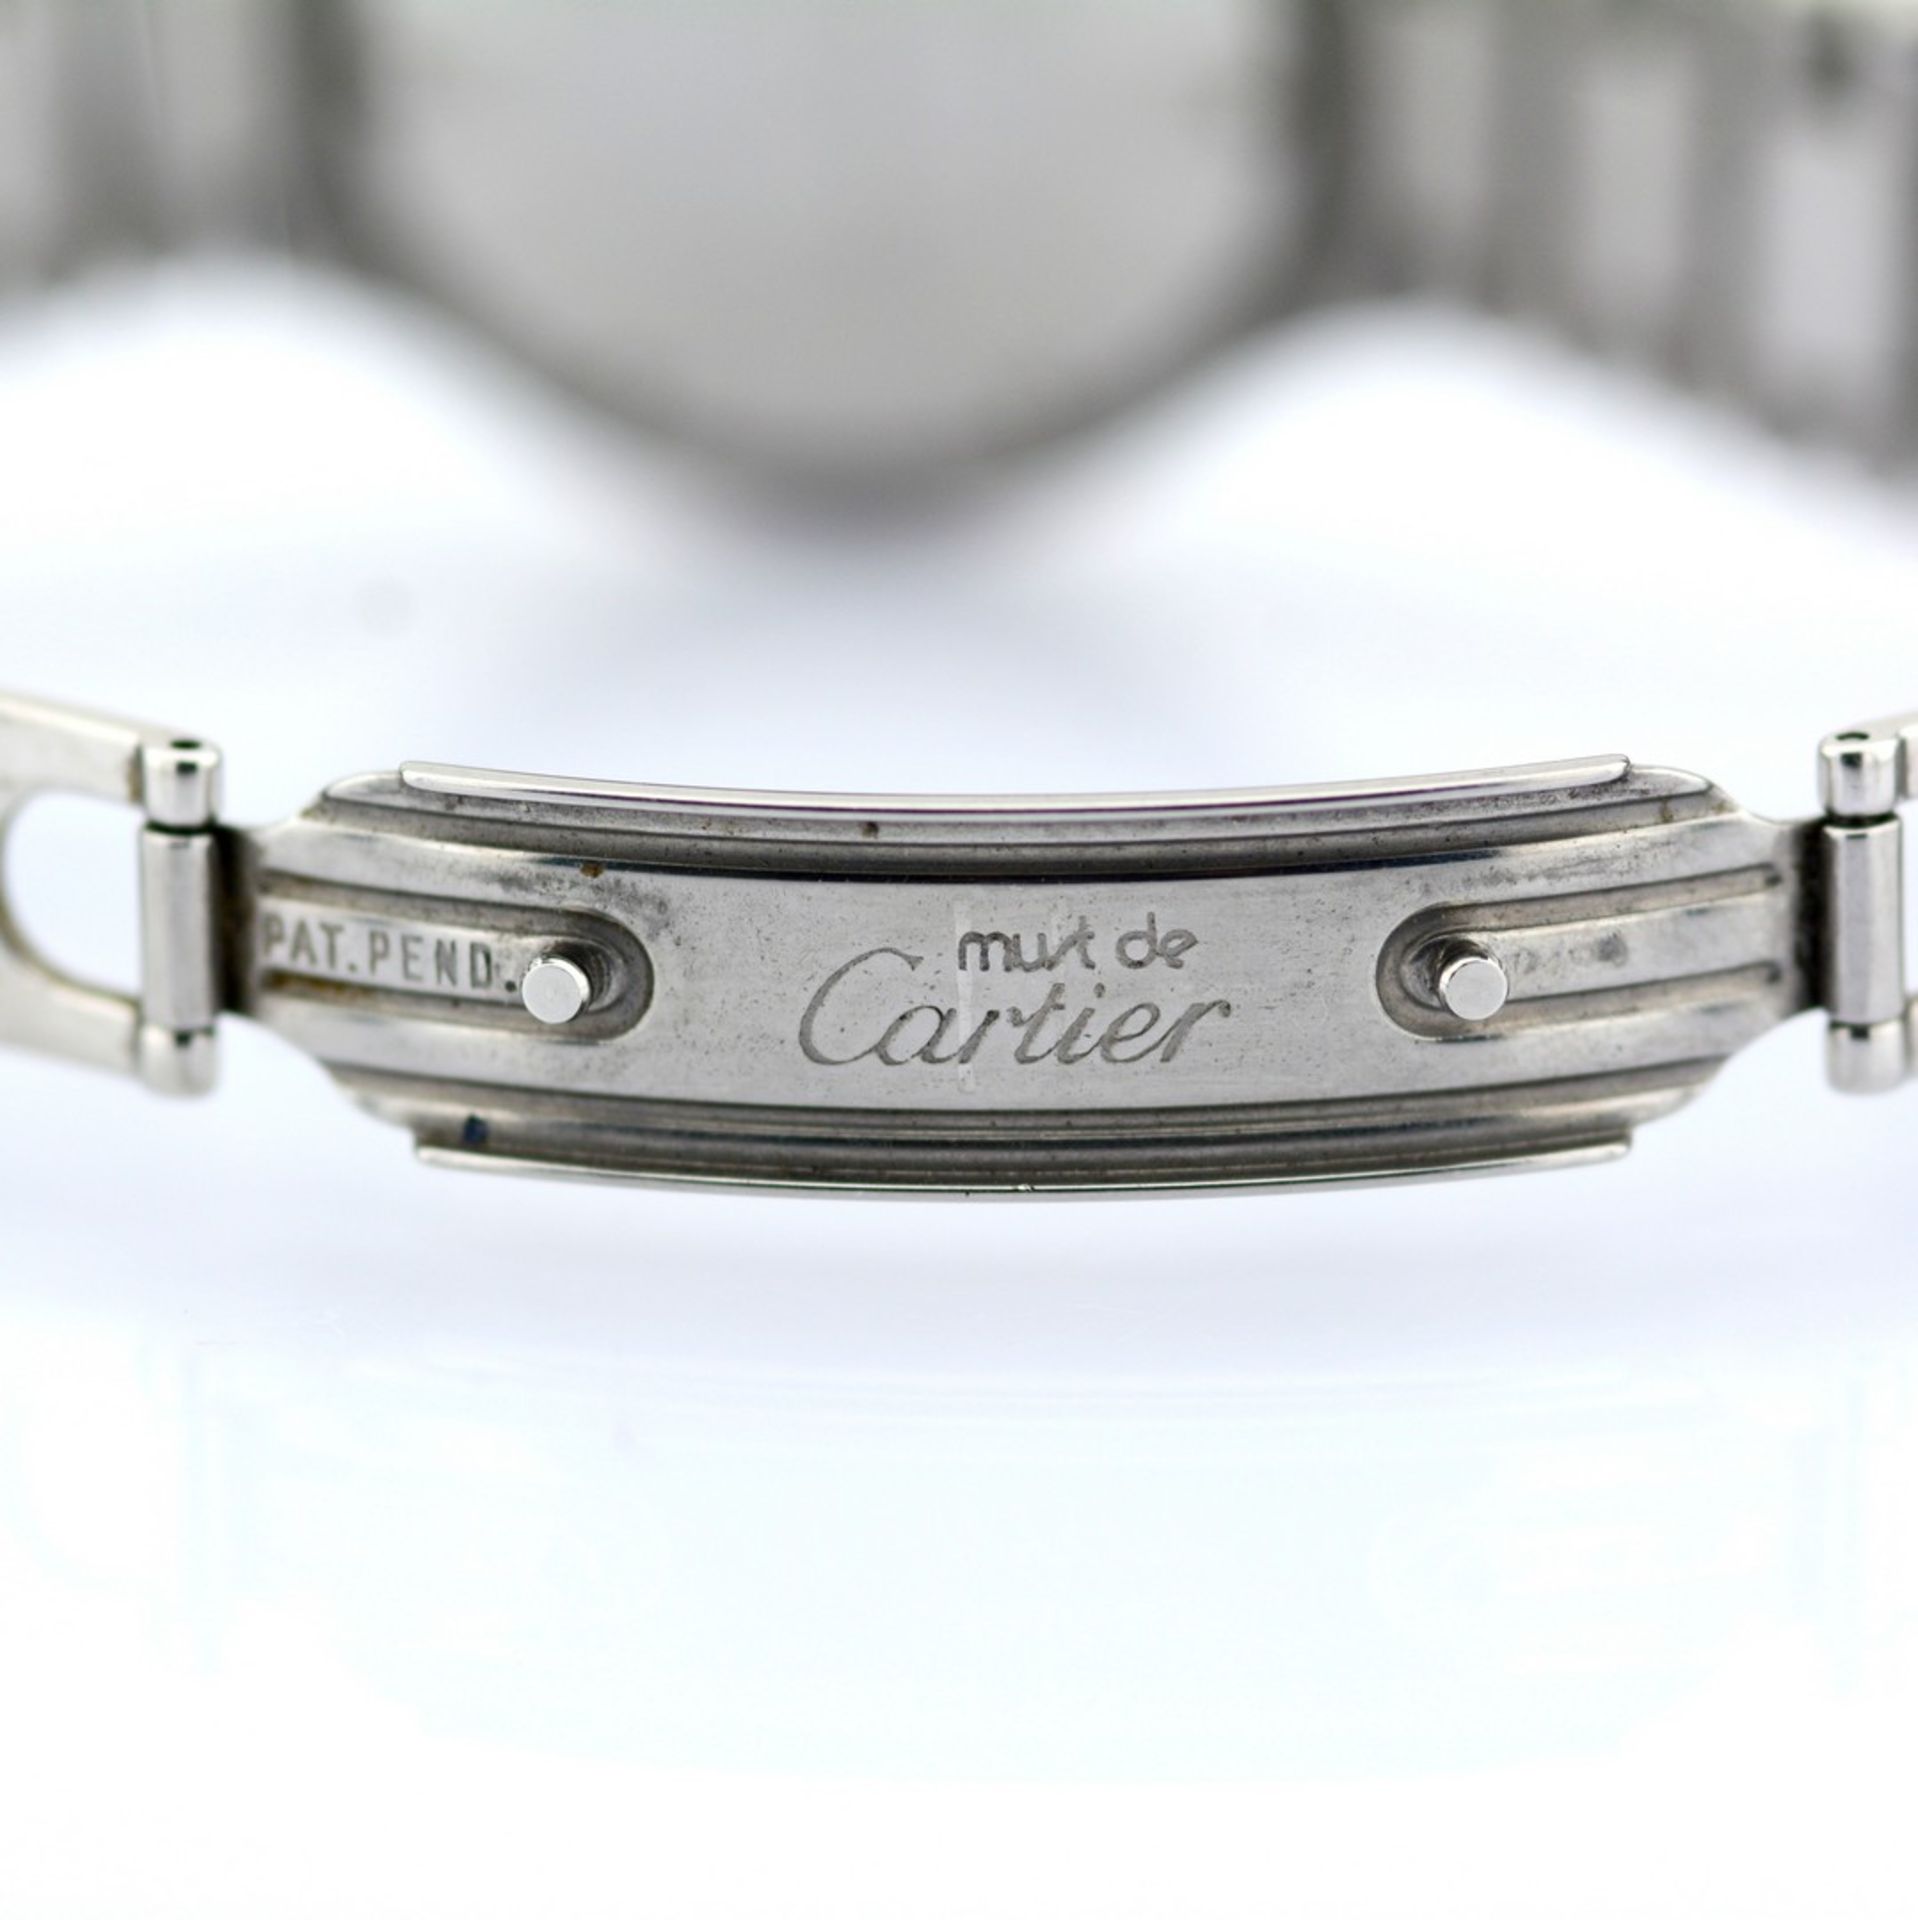 Cartier / Must de 21 - Lady's Steel Wrist Watch - Image 4 of 6